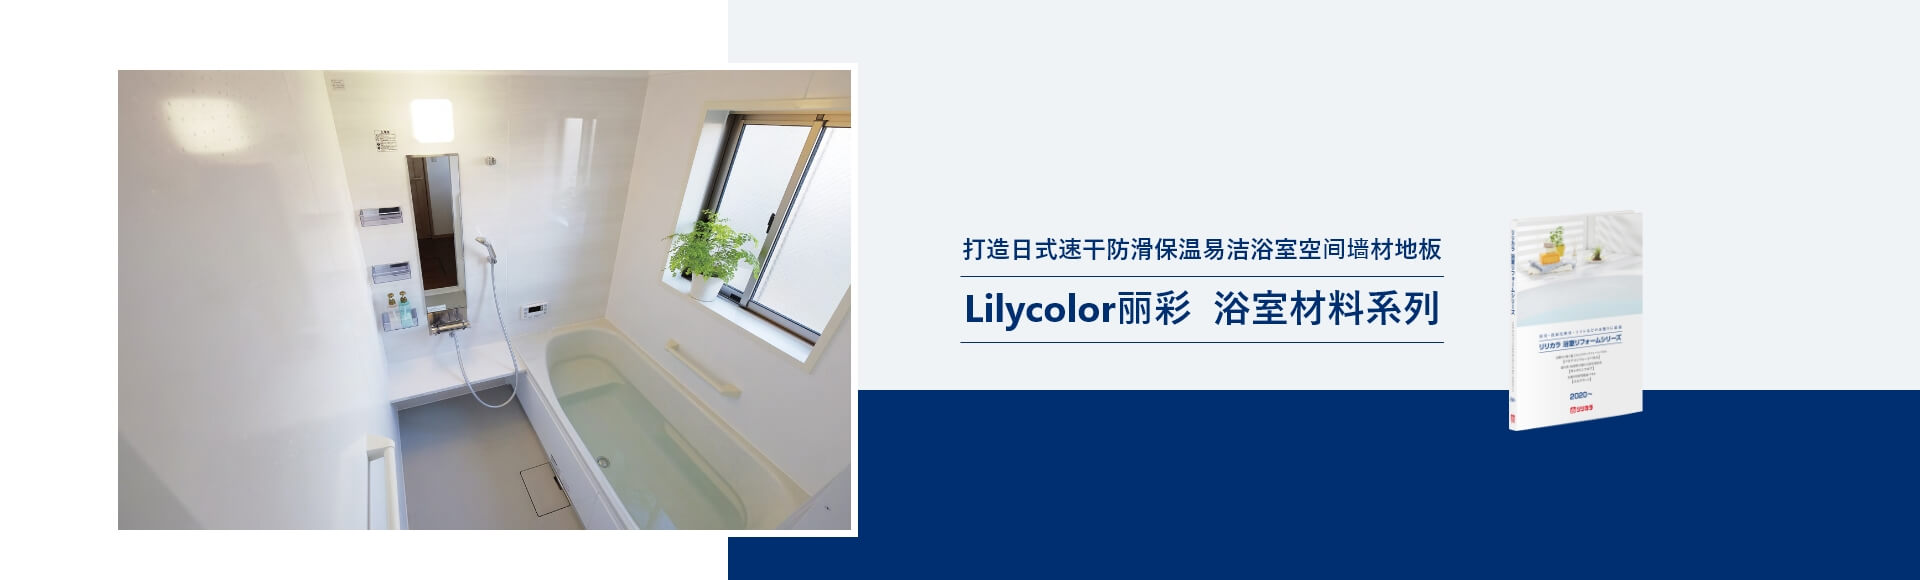 打造日式速干防滑保温易洁浴室空间墙材地板 Lilycolor丽彩 浴室材料系列